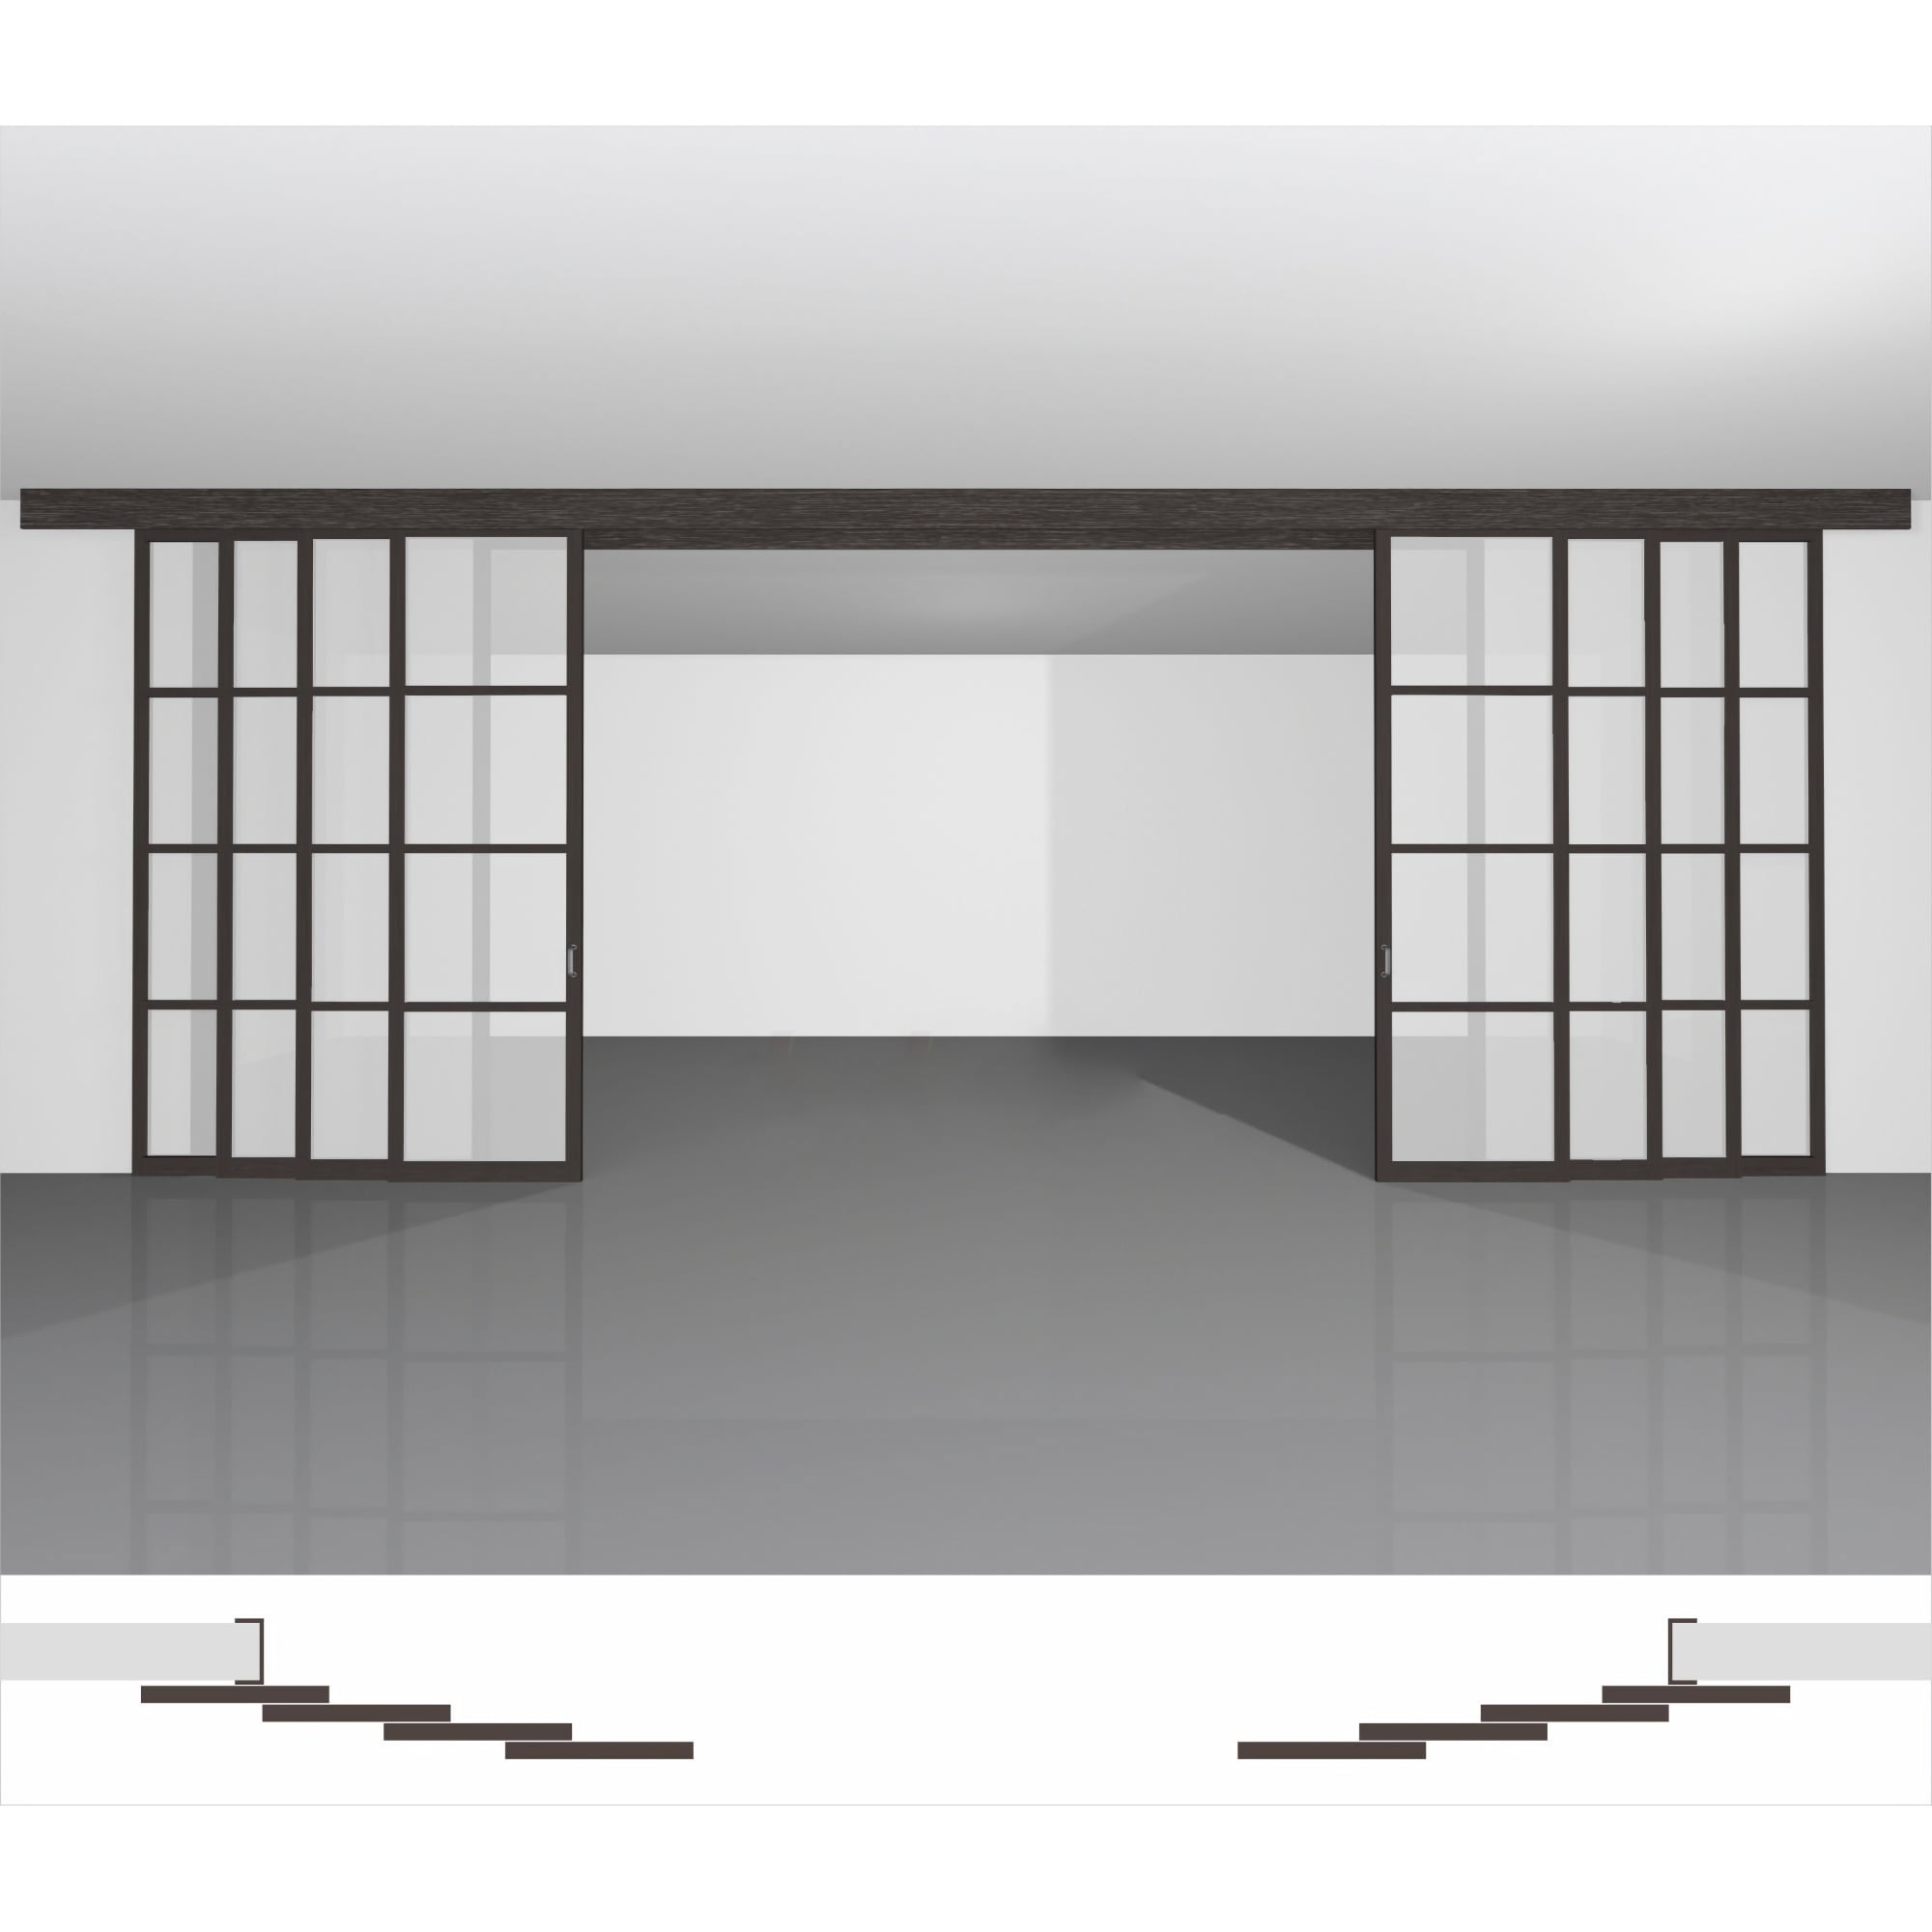 Міжкімнатна перегородка для зонування кімнати, доступна до купівлі в інтернет-магазині недорого - P04.1d комплект із 8 стулок